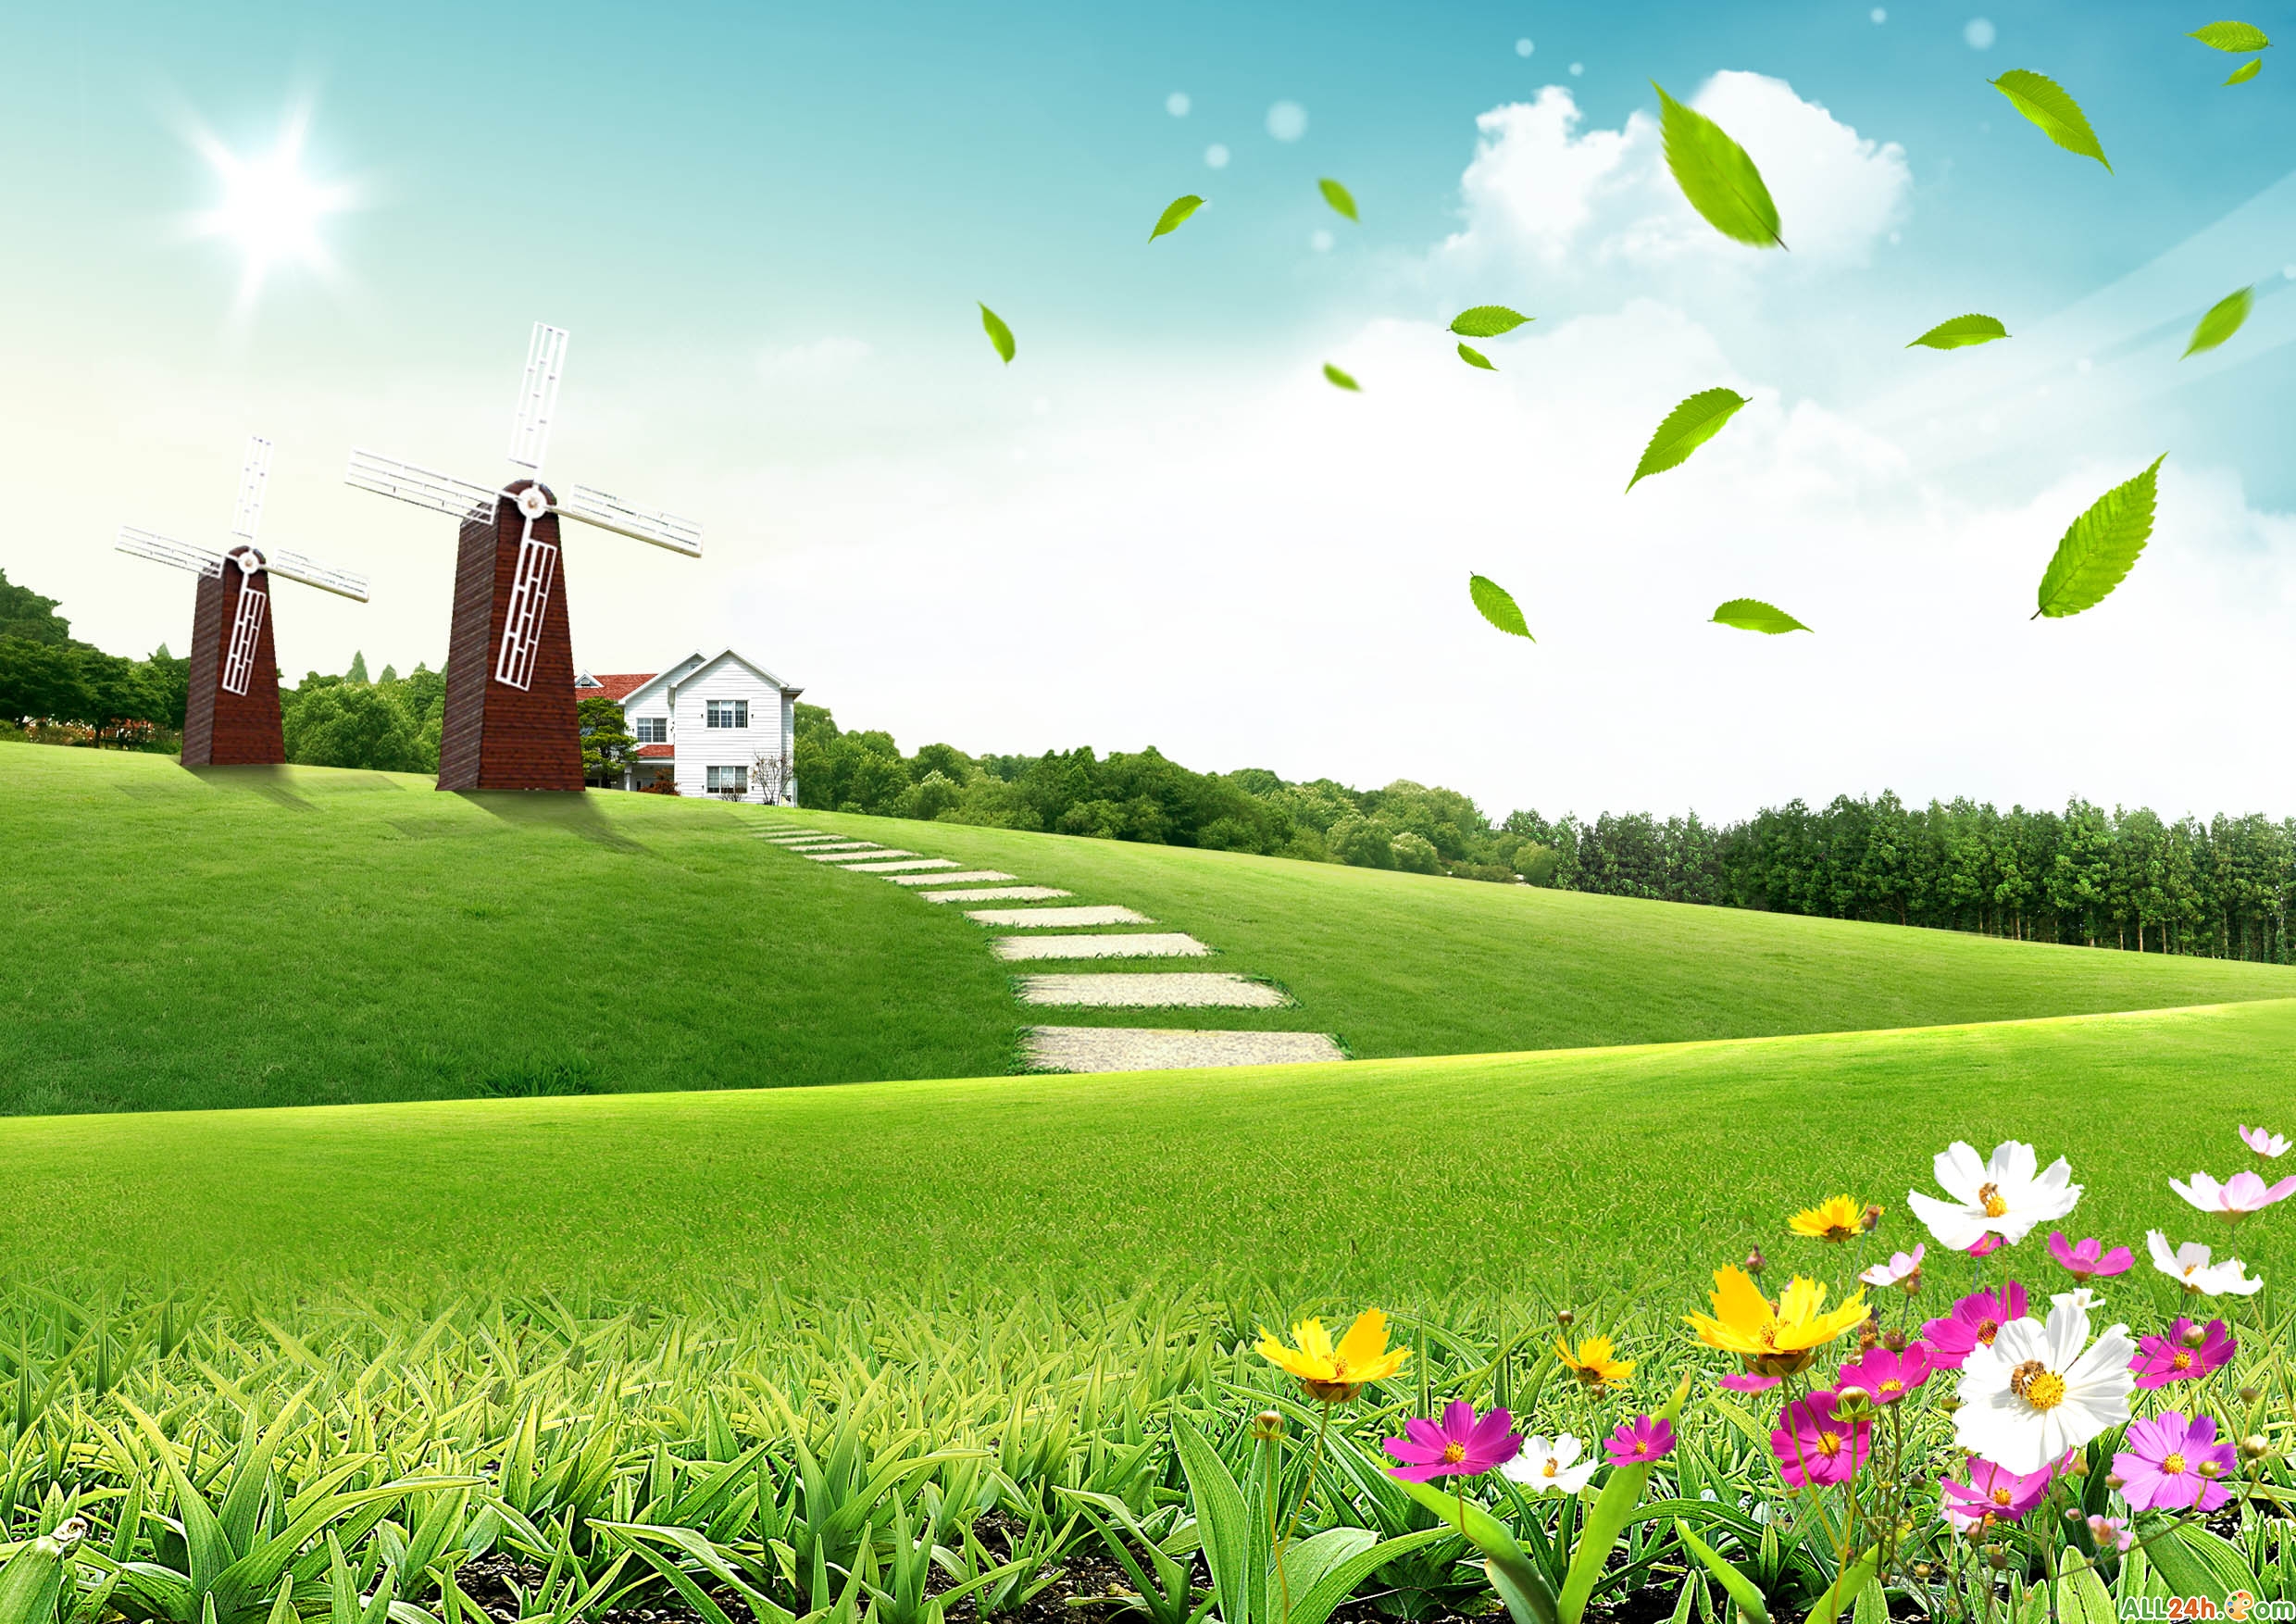 PSD - FREE - PSD free hình nền thiên nhiên cối xay gió | Diễn đàn đồ họa -  Học thiết kế đồ họa | Photoshop24h